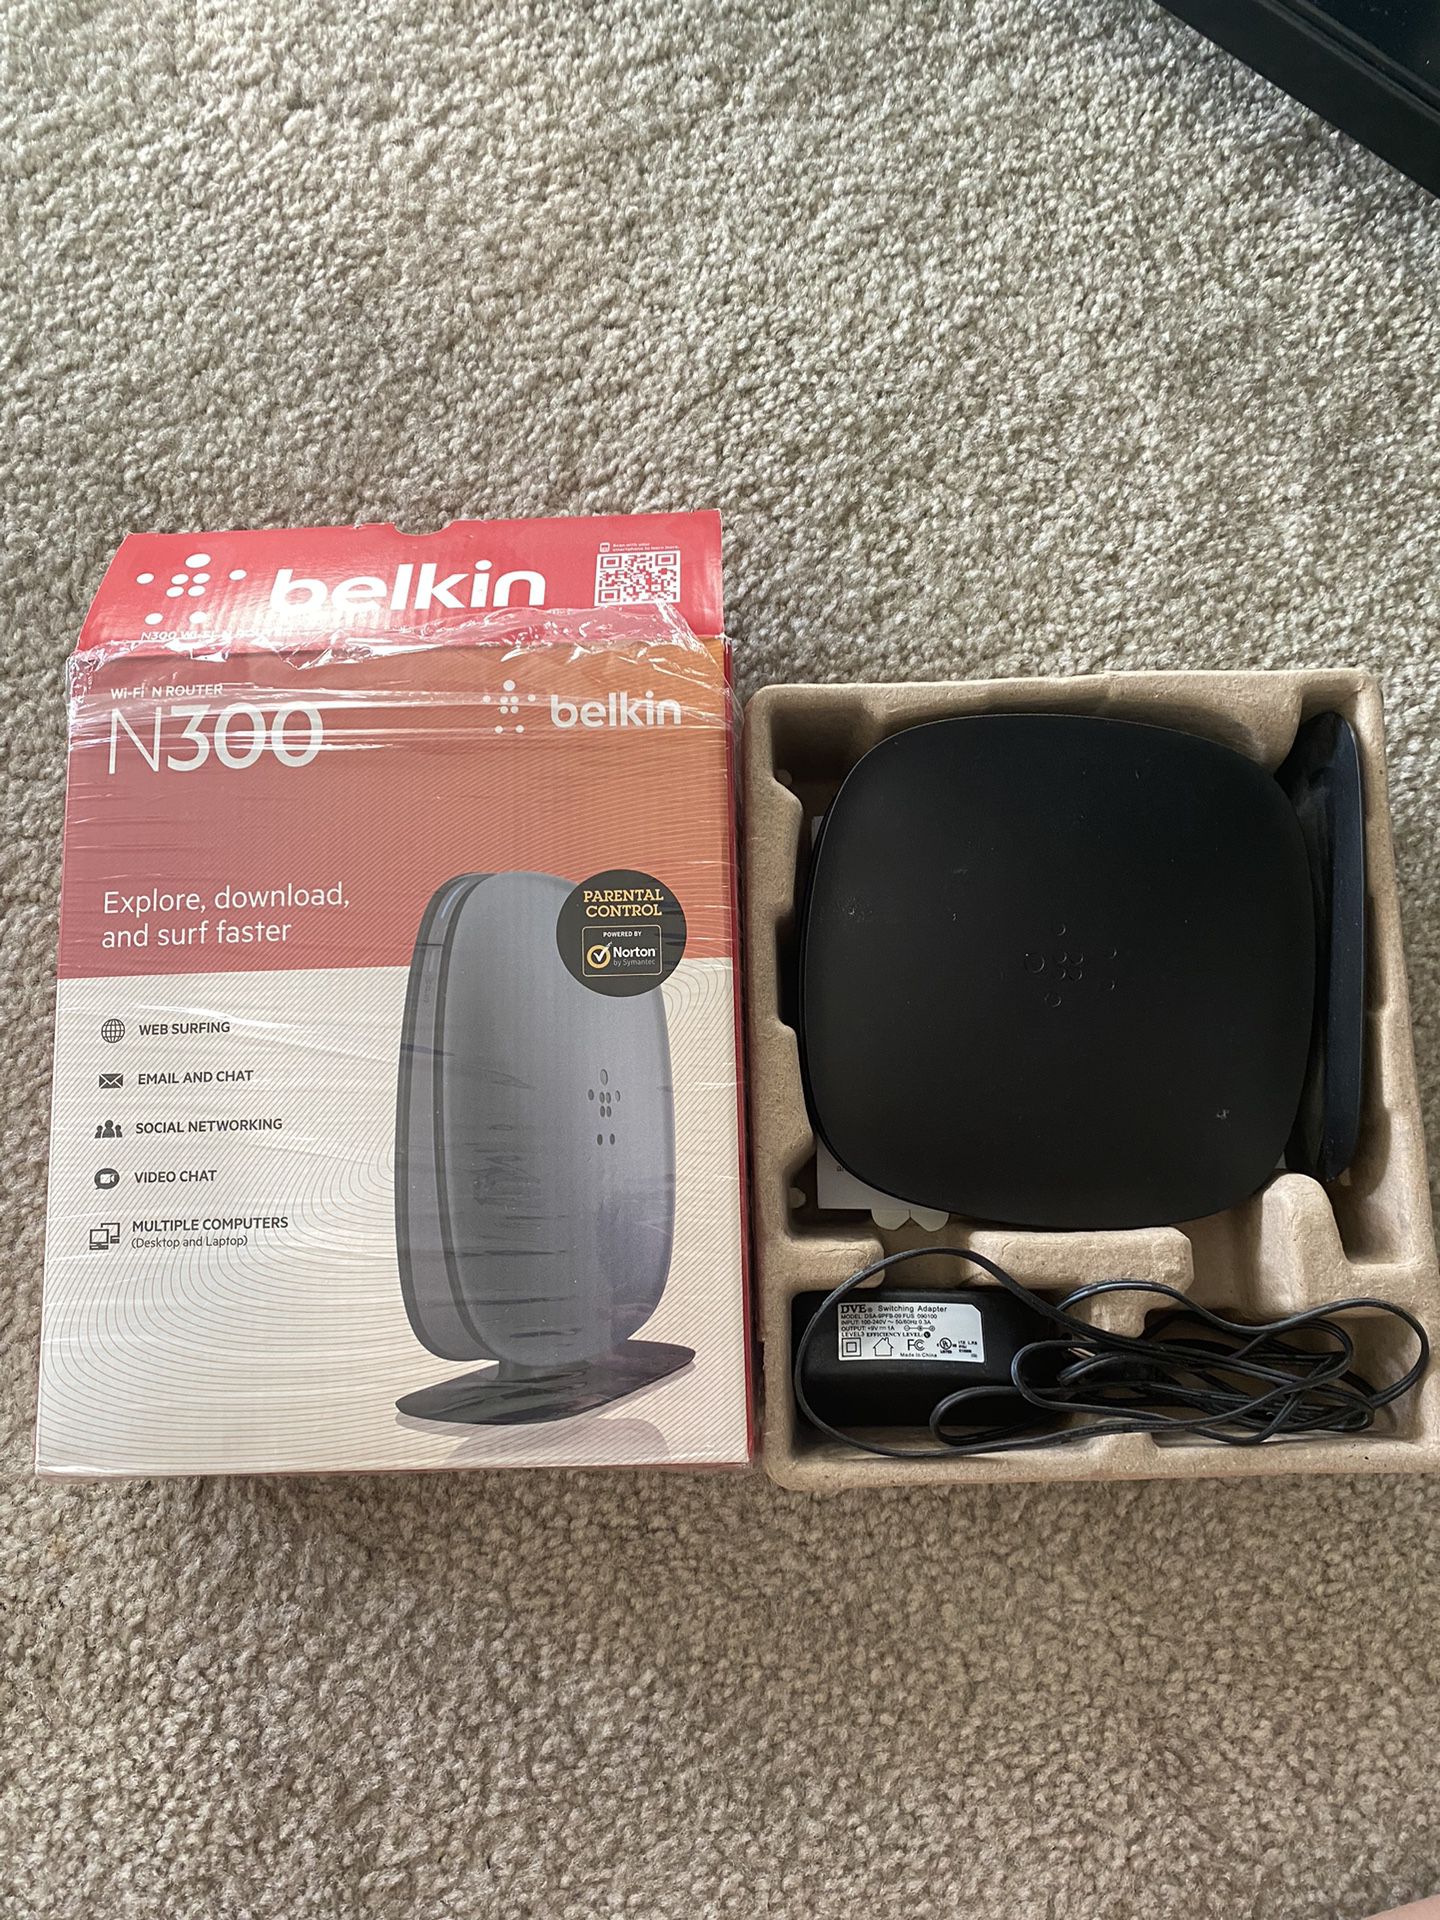 Belkin N300 Wireless router